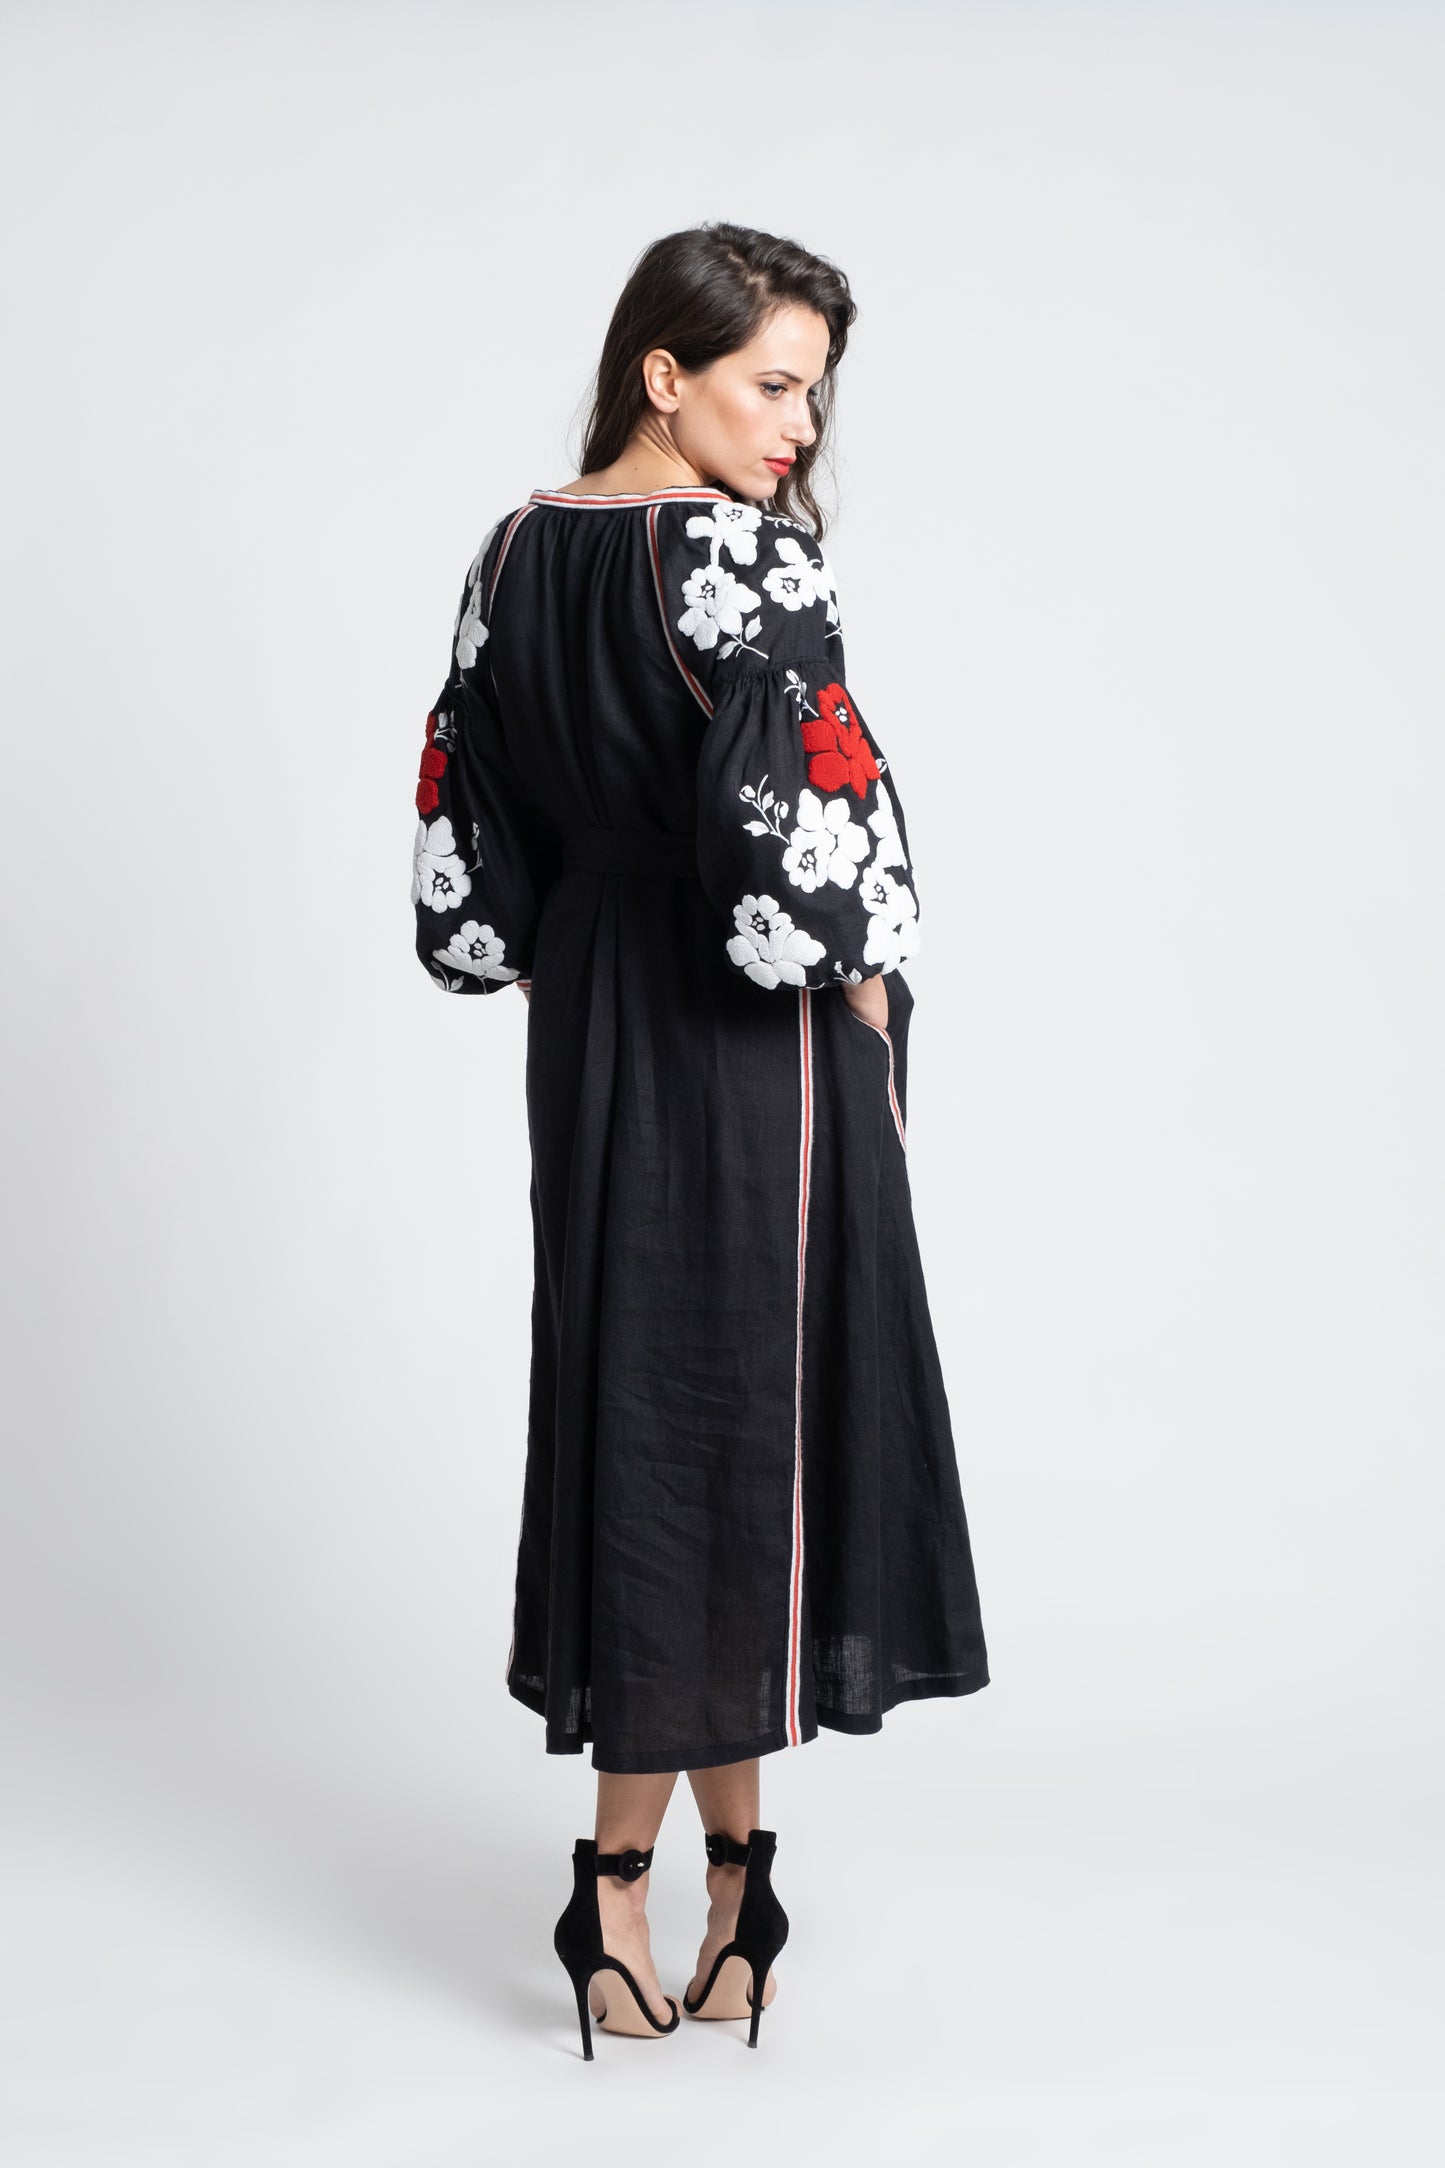 Malibu: Vestido de lino negro bordado en blanco y rojo, con cinturón, pompones y botones de nácar.